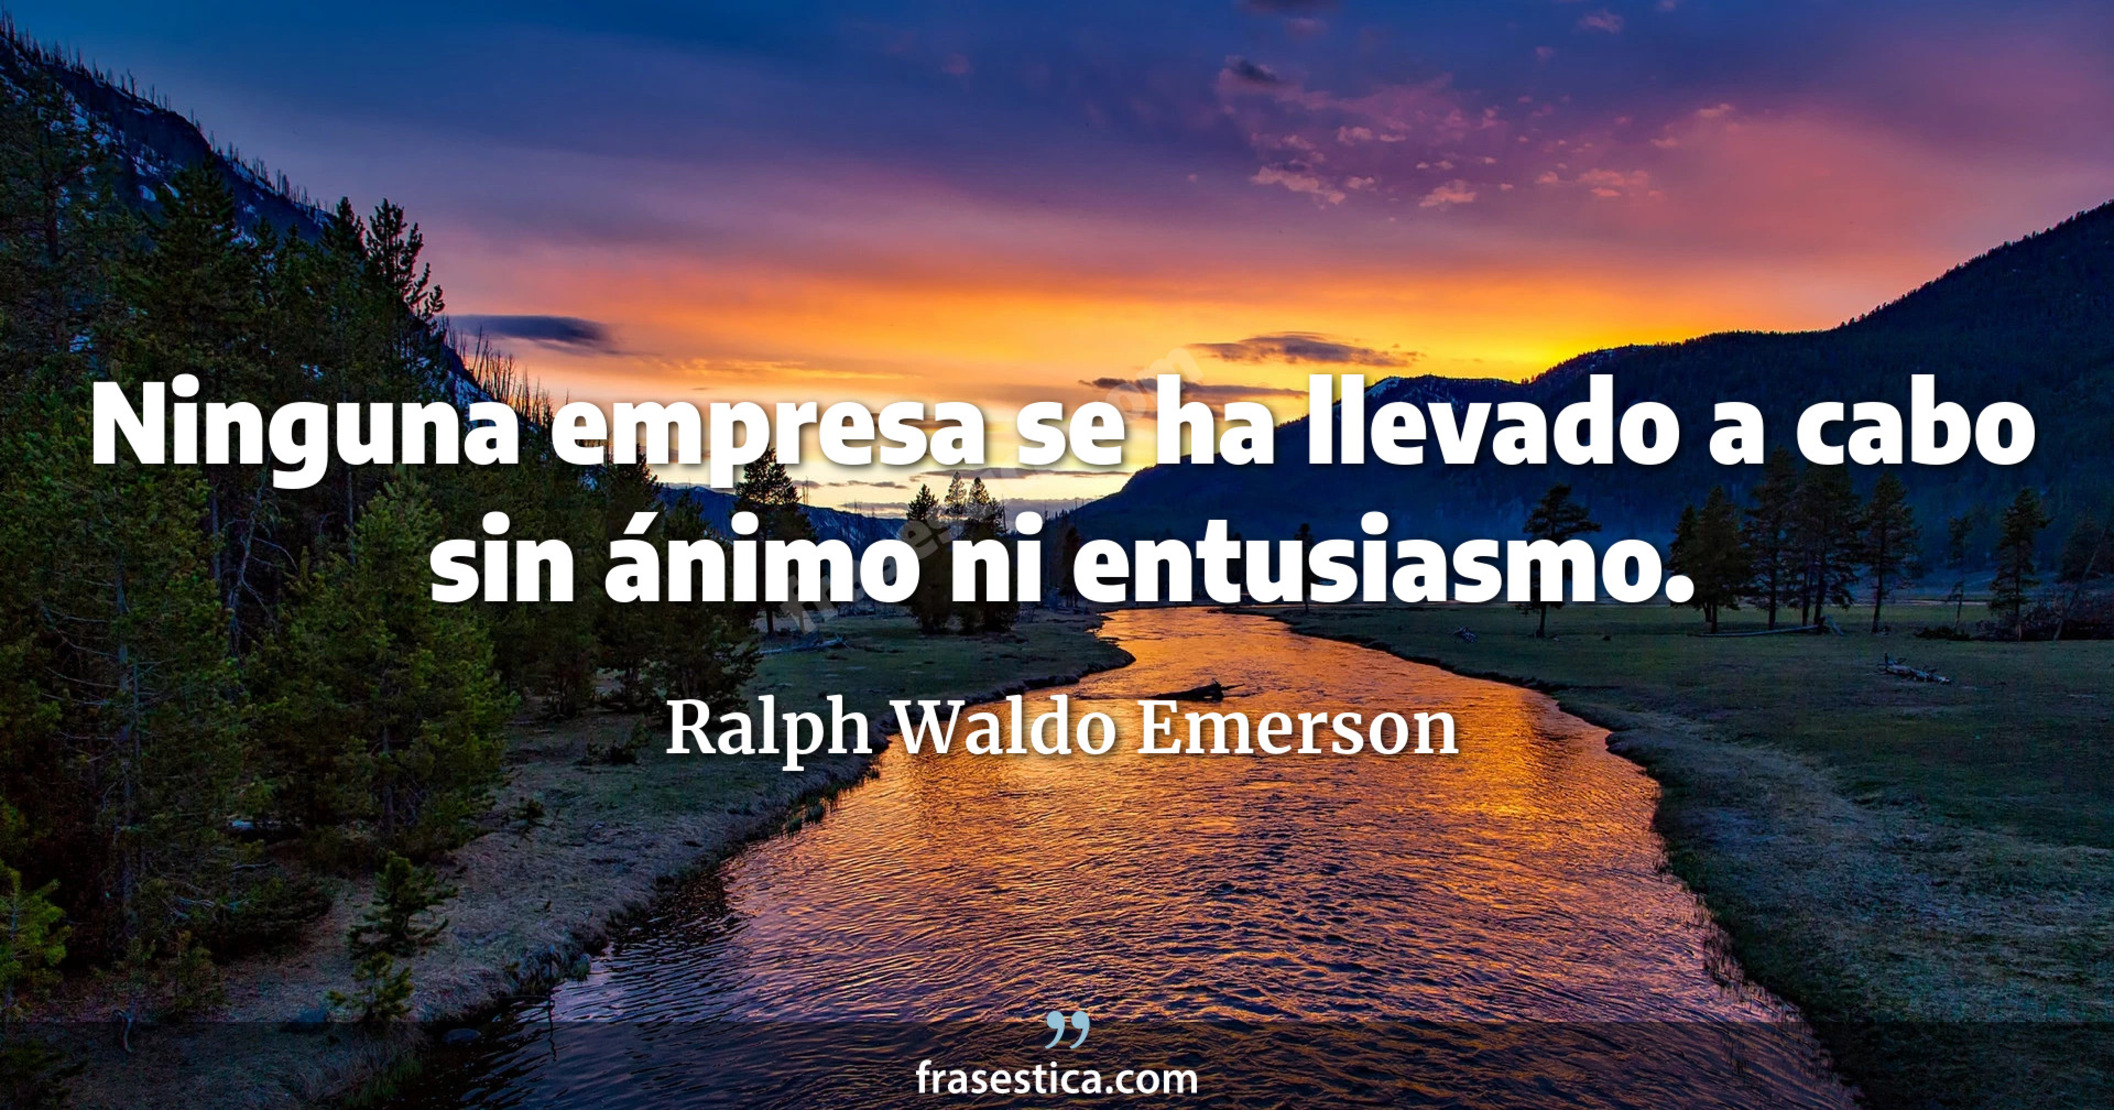 Ninguna empresa se ha llevado a cabo sin ánimo ni entusiasmo. - Ralph Waldo Emerson